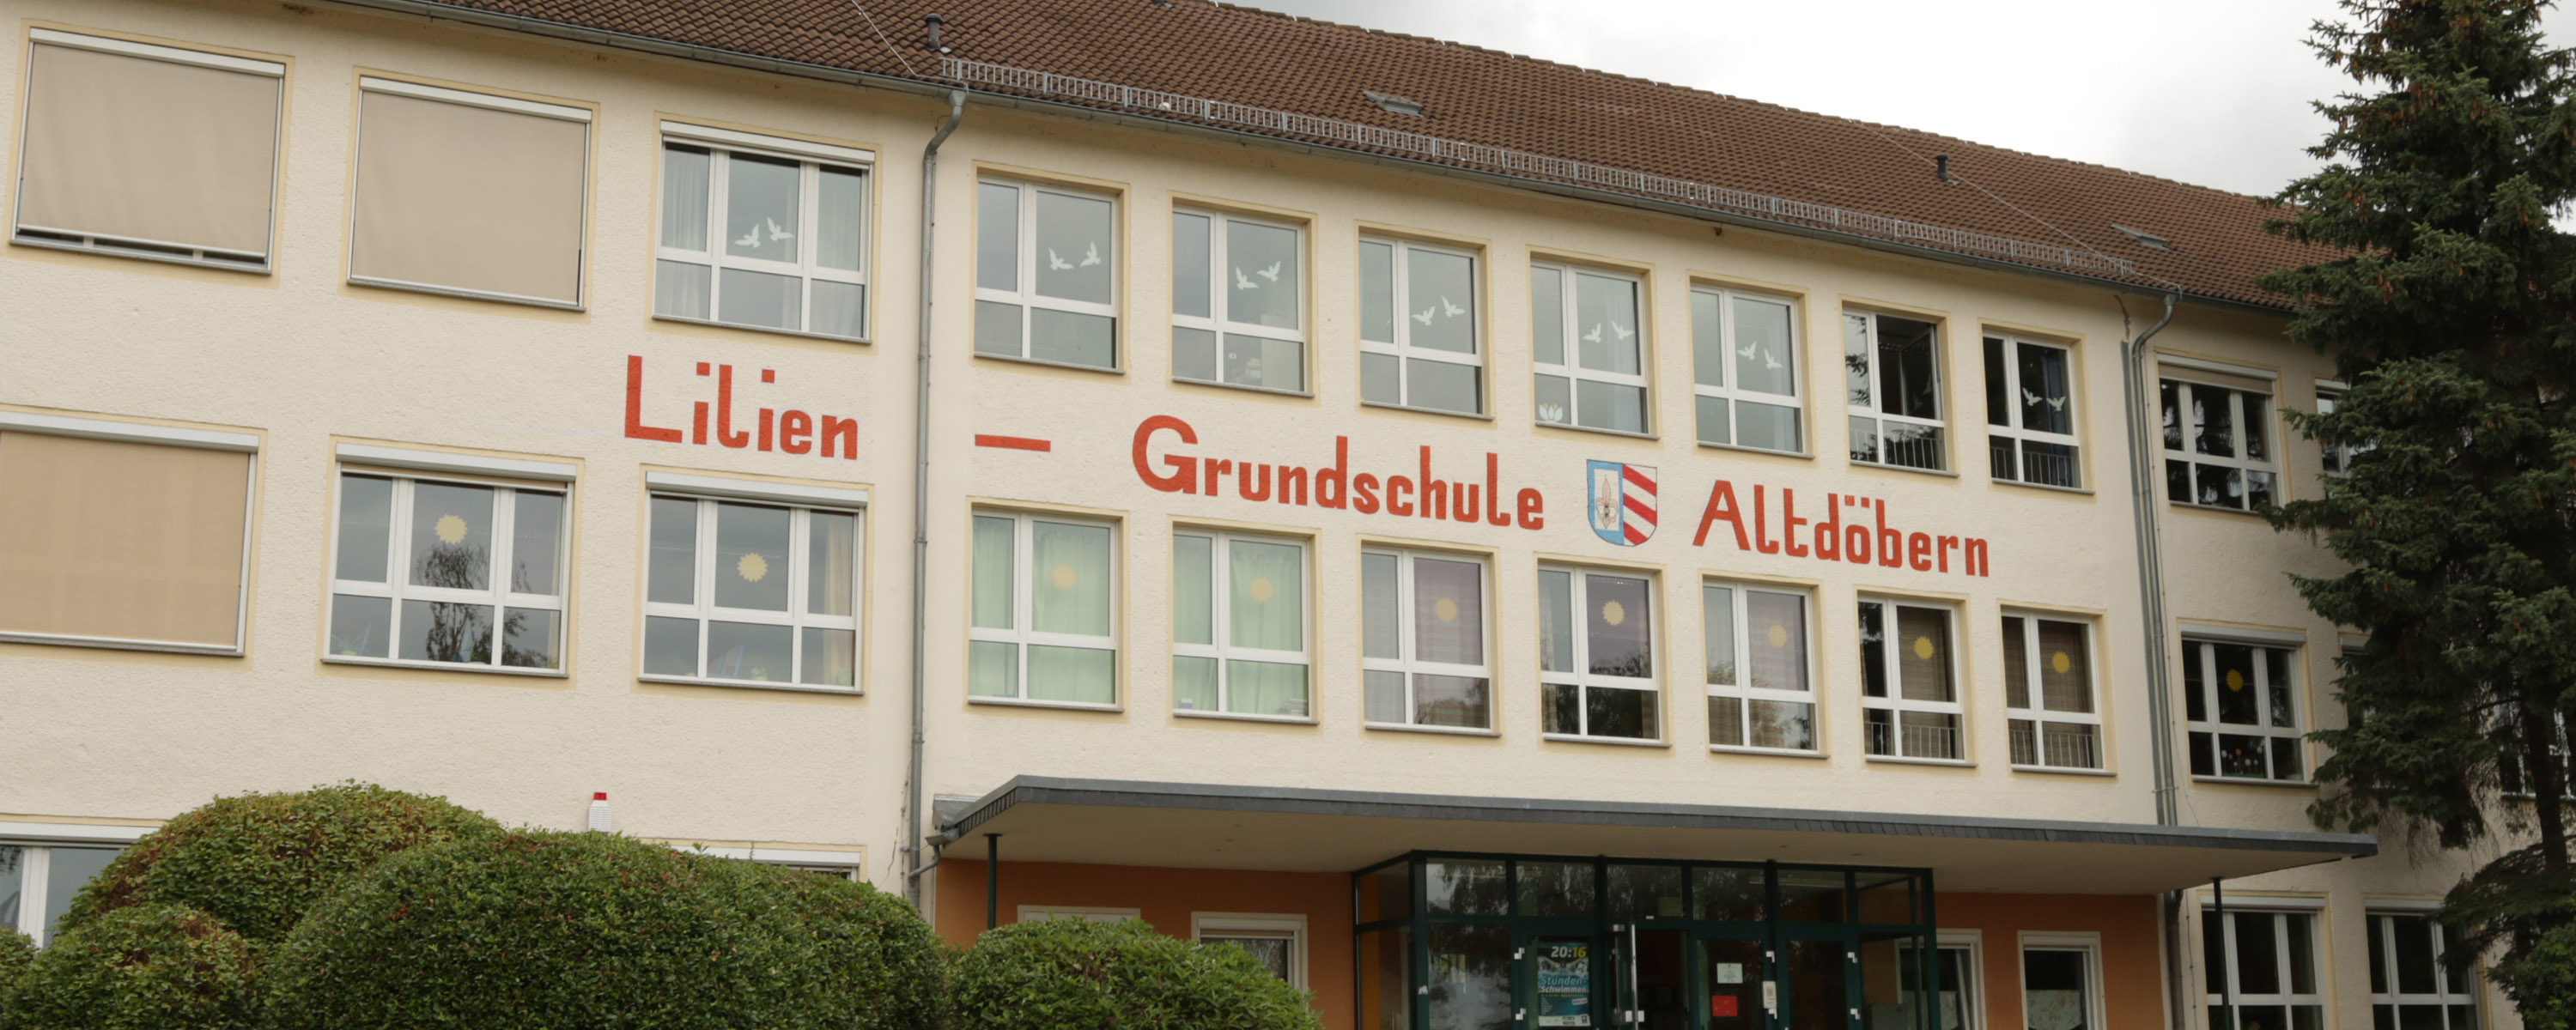 Lilien-Grundschule-Altdöbern